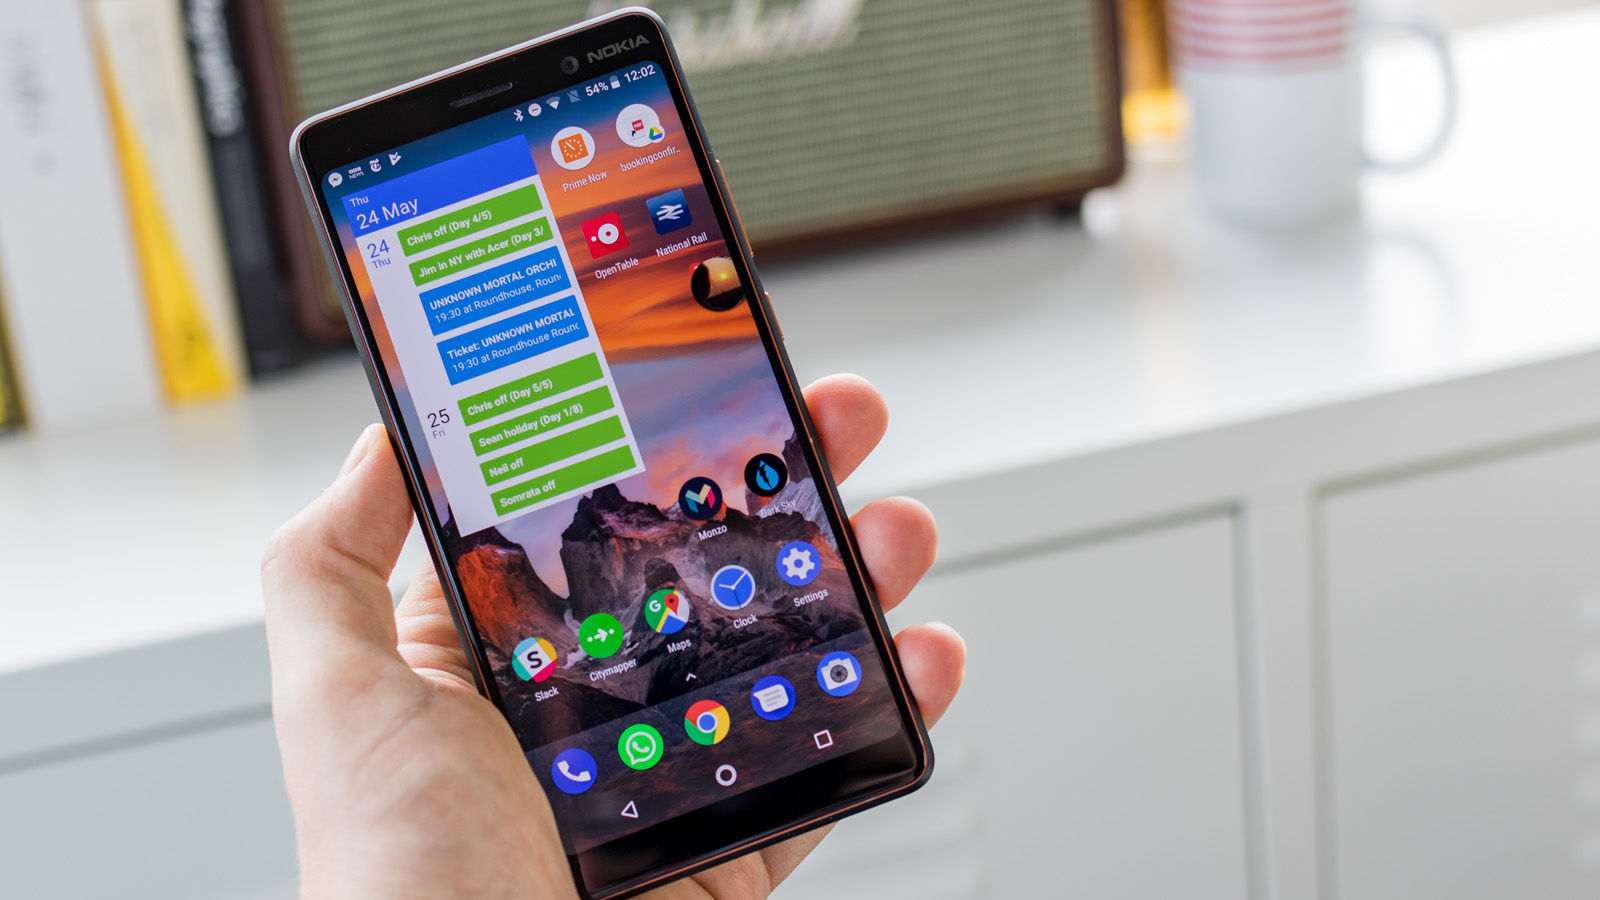 September Nokia 7 Plus Mendapat Update Android Pie Versi Stabil